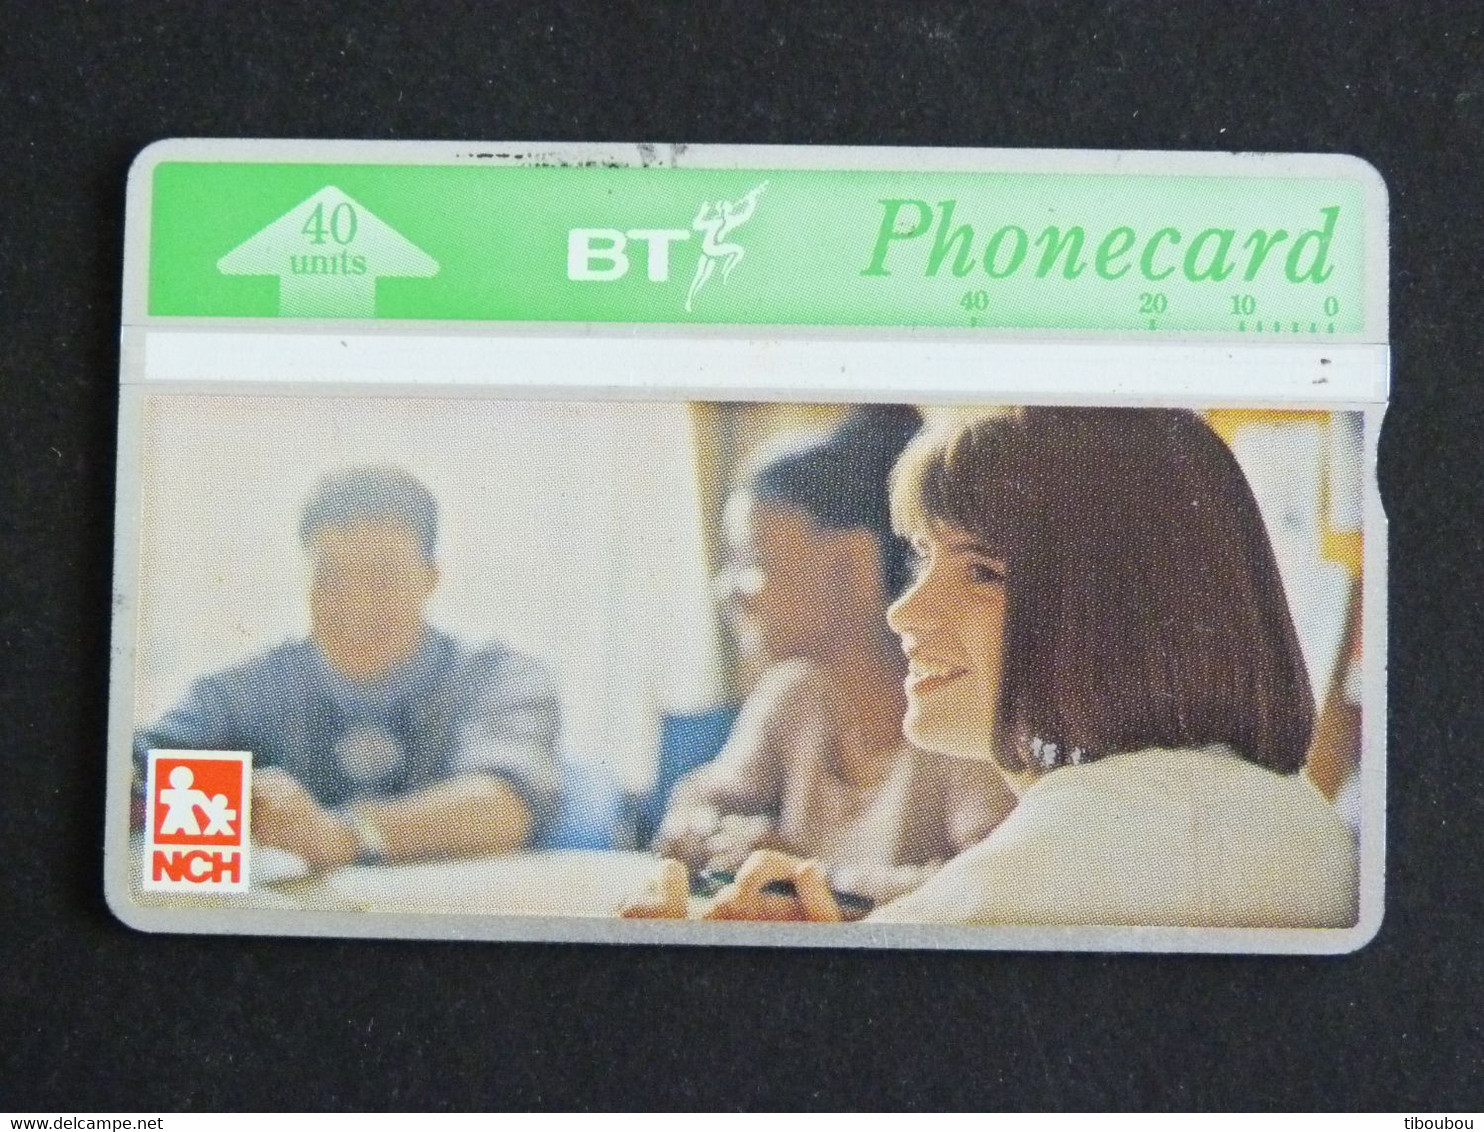 TELECARTE BRITISH TELECOM PHONECARD 40 UNITS - NCH - BT Souvenir